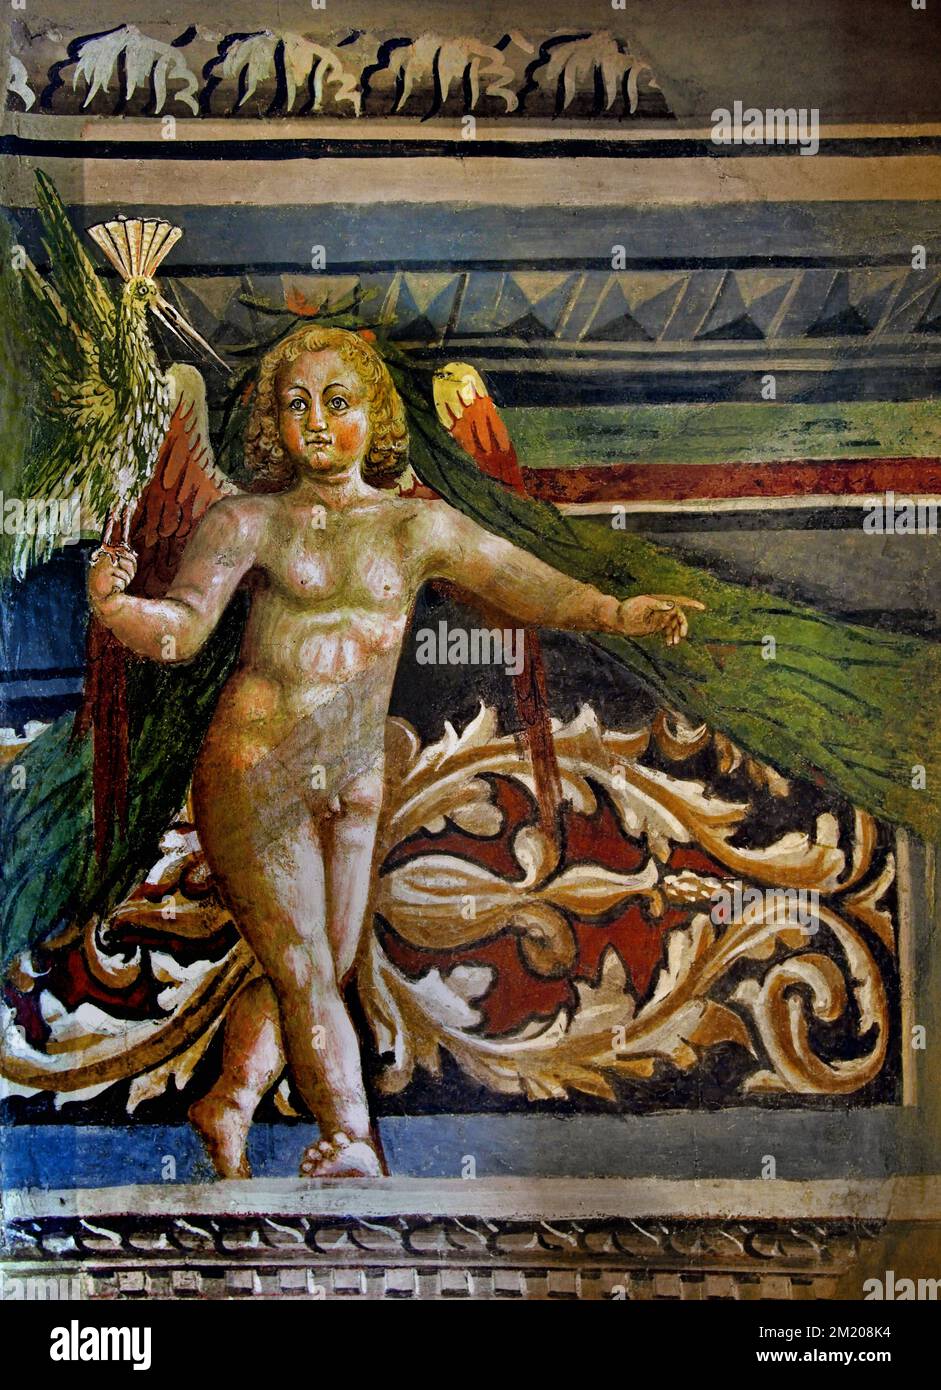 Lorenzo di Pietro il Vecchietta, ein Stück Wandschmuck mit Putto und Soffitton. Christliche Kunst, Italien, Italienisch. Nationale Kunstgalerie von Siena. Stockfoto